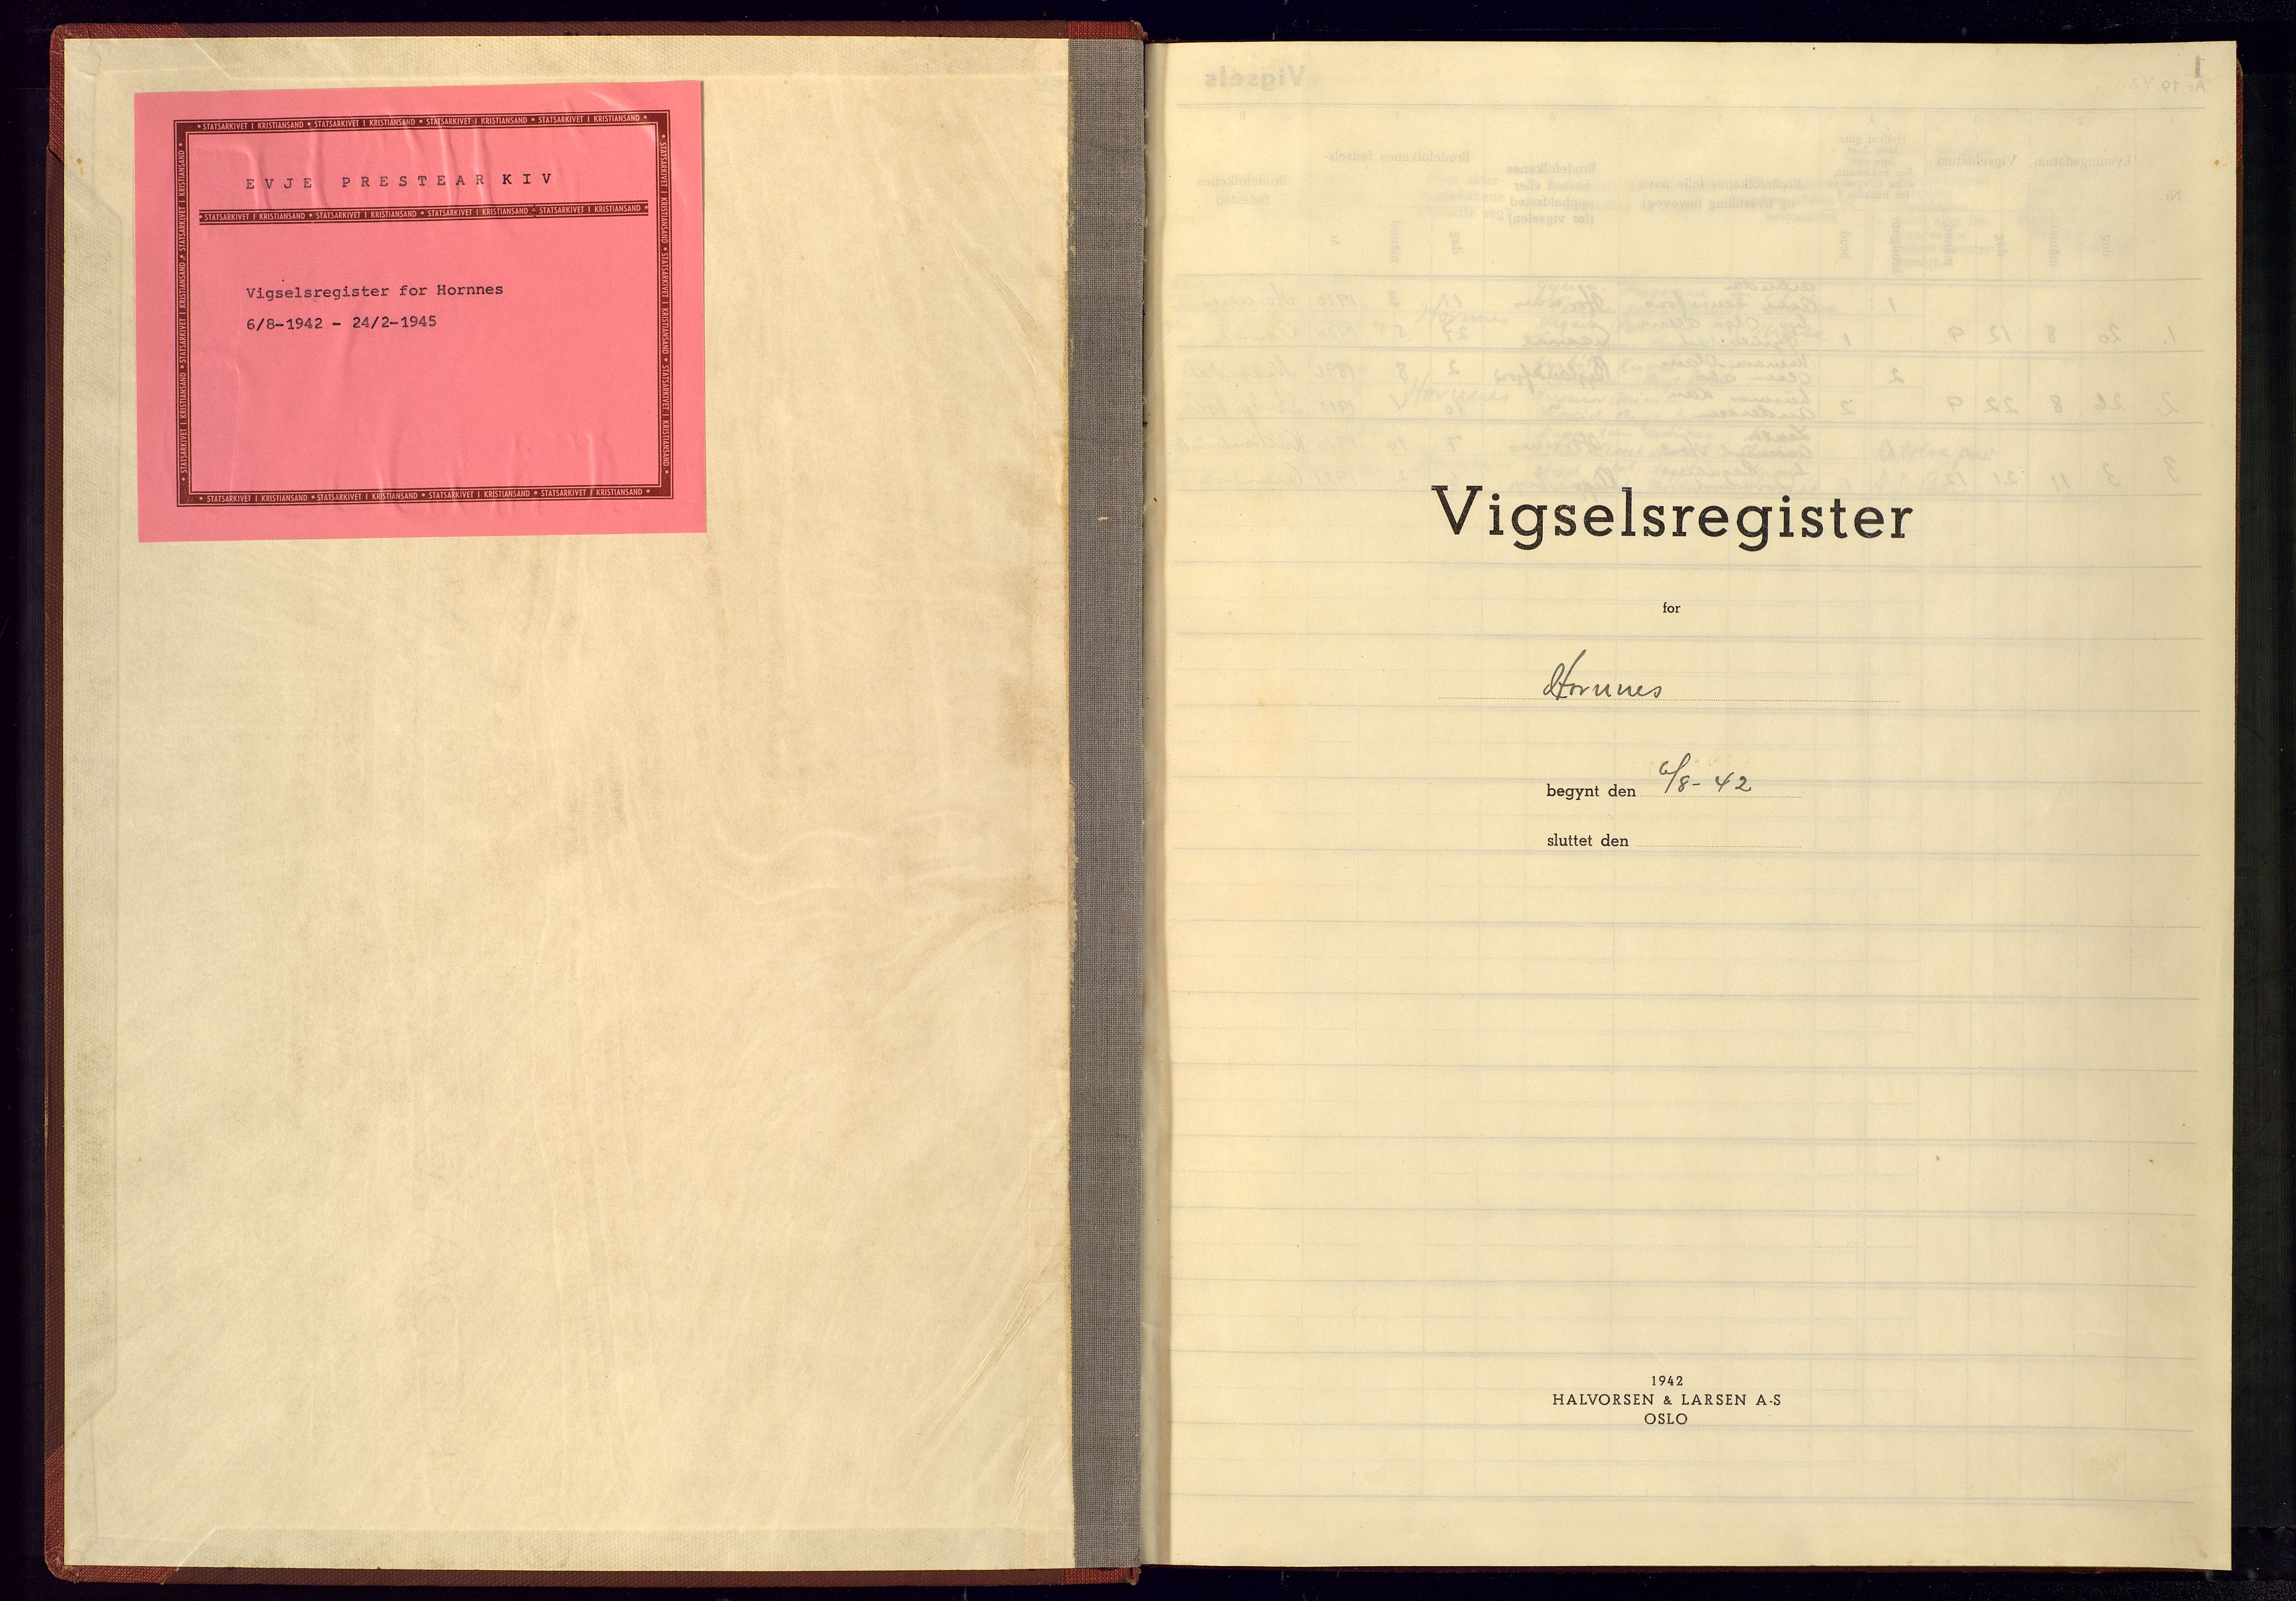 Evje sokneprestkontor, SAK/1111-0008/J/Je/L0005: Marriage register no. II.6.5, 1942-1945